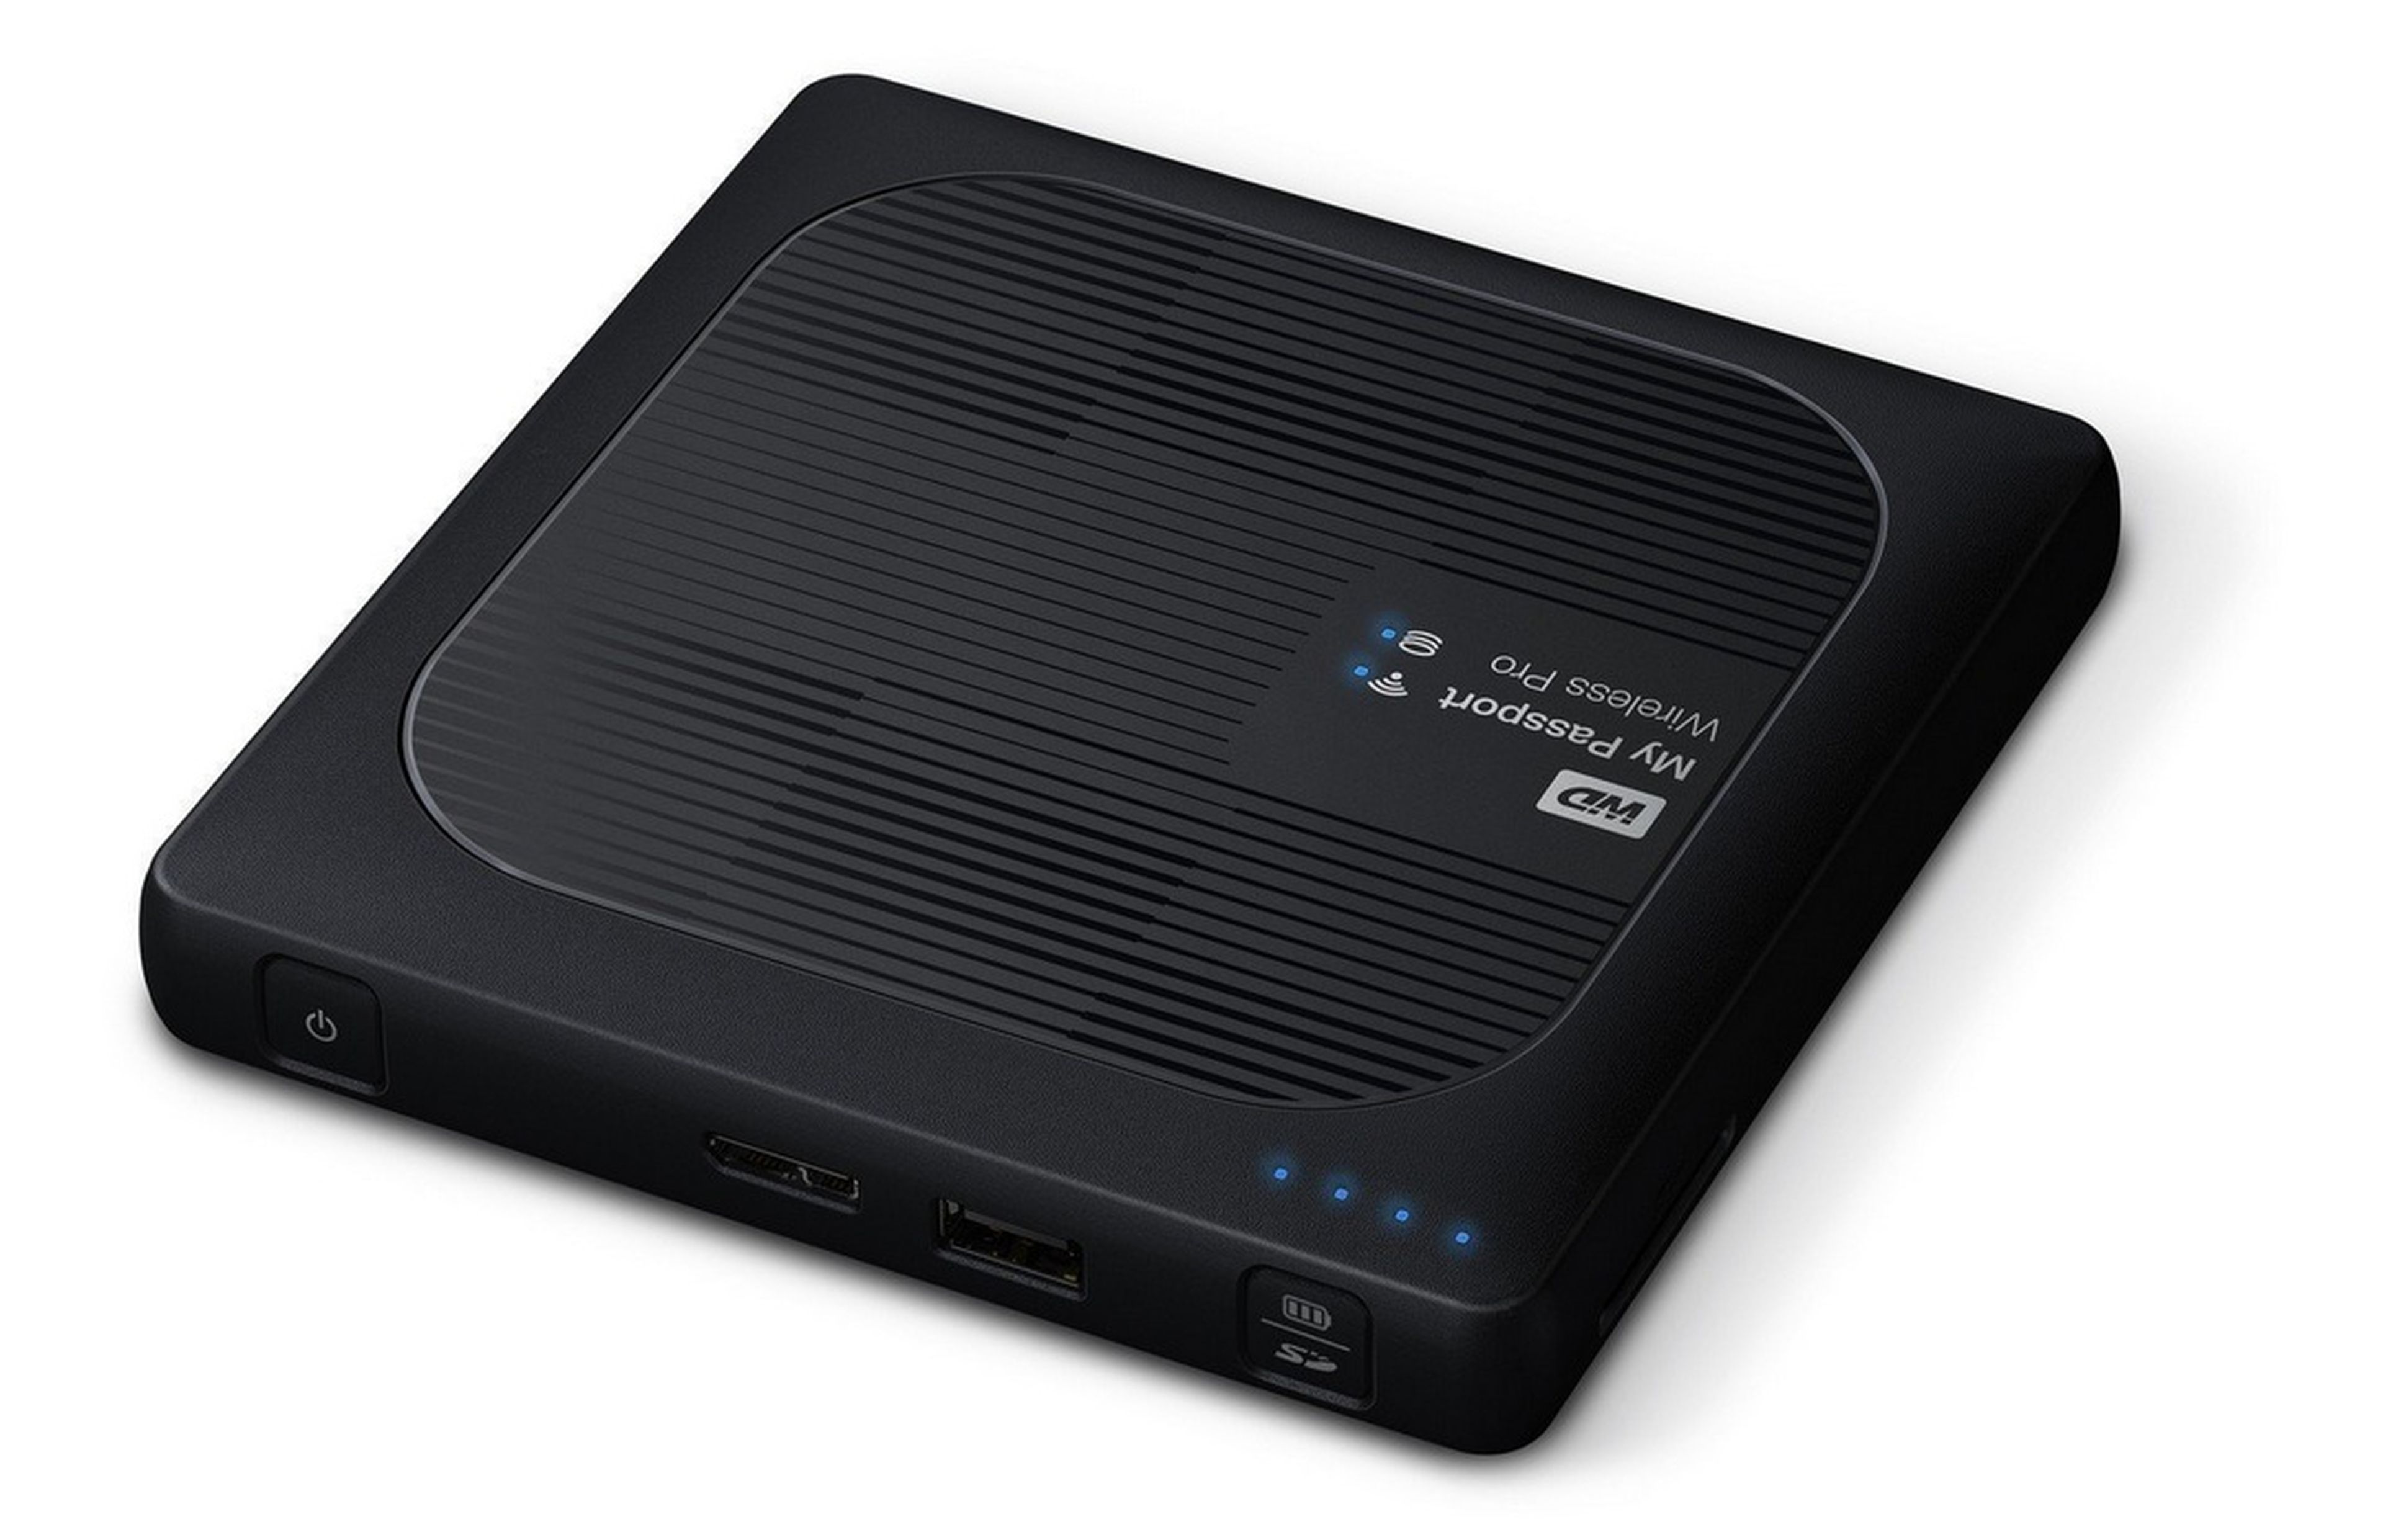 Disco duro multimedia grabador TDT HD doble sintonizador: la mejor opción  para grabar tus programas favoritos - UDOE